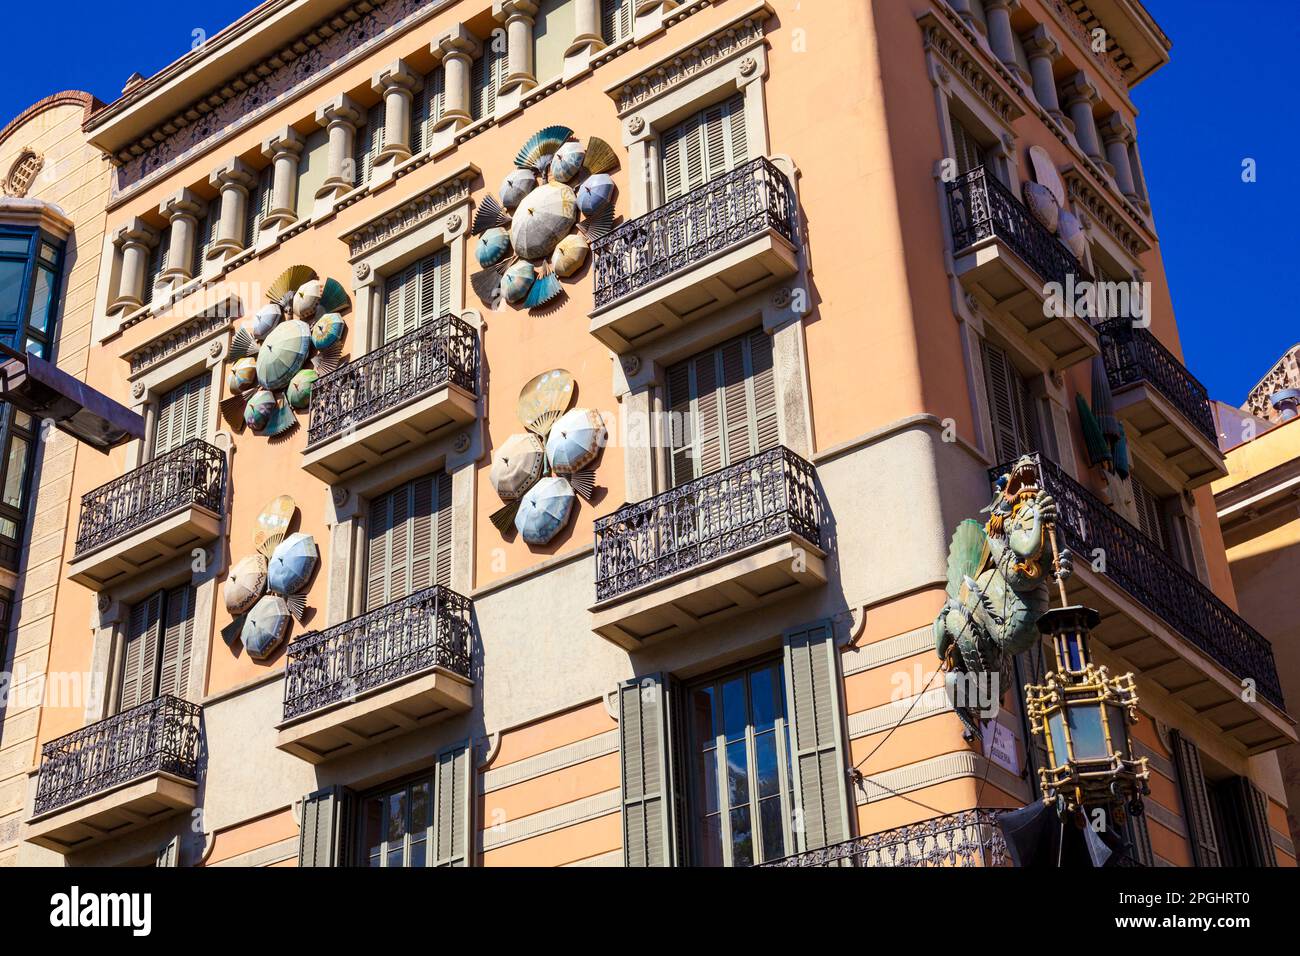 Casa Bruno Cuadros with umbrellas decorating facade on La Rambla, Barcelona, Catalonia, Spain Stock Photo